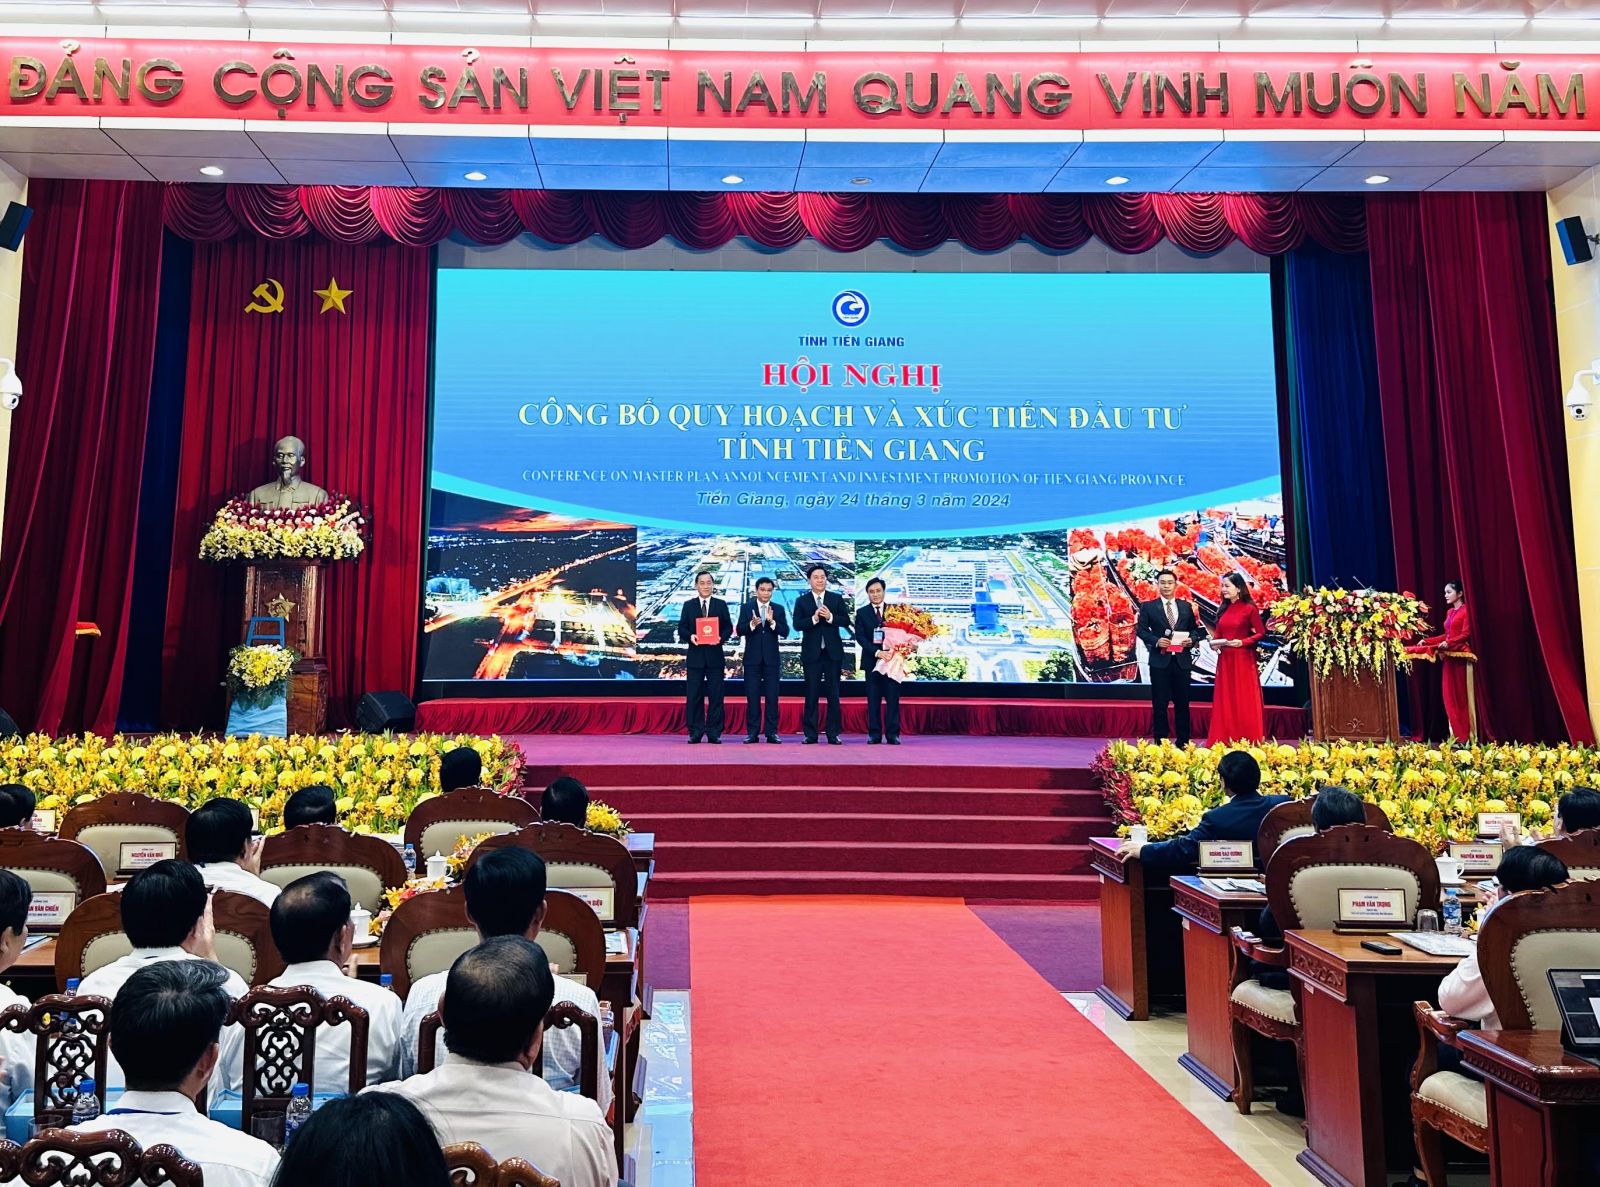 Ông Trần Duy Đông, Thứ trưởng Bộ Kế hoạch và Đầu tư trao Quyết định của Thủ tướng Chính phủ phê duyệt Quy hoạch tỉnh Tiền Giang thời kỳ 2021-2030, tầm nhìn đến năm 2050 cho lãnh đạo tỉnh Tiền Giang.